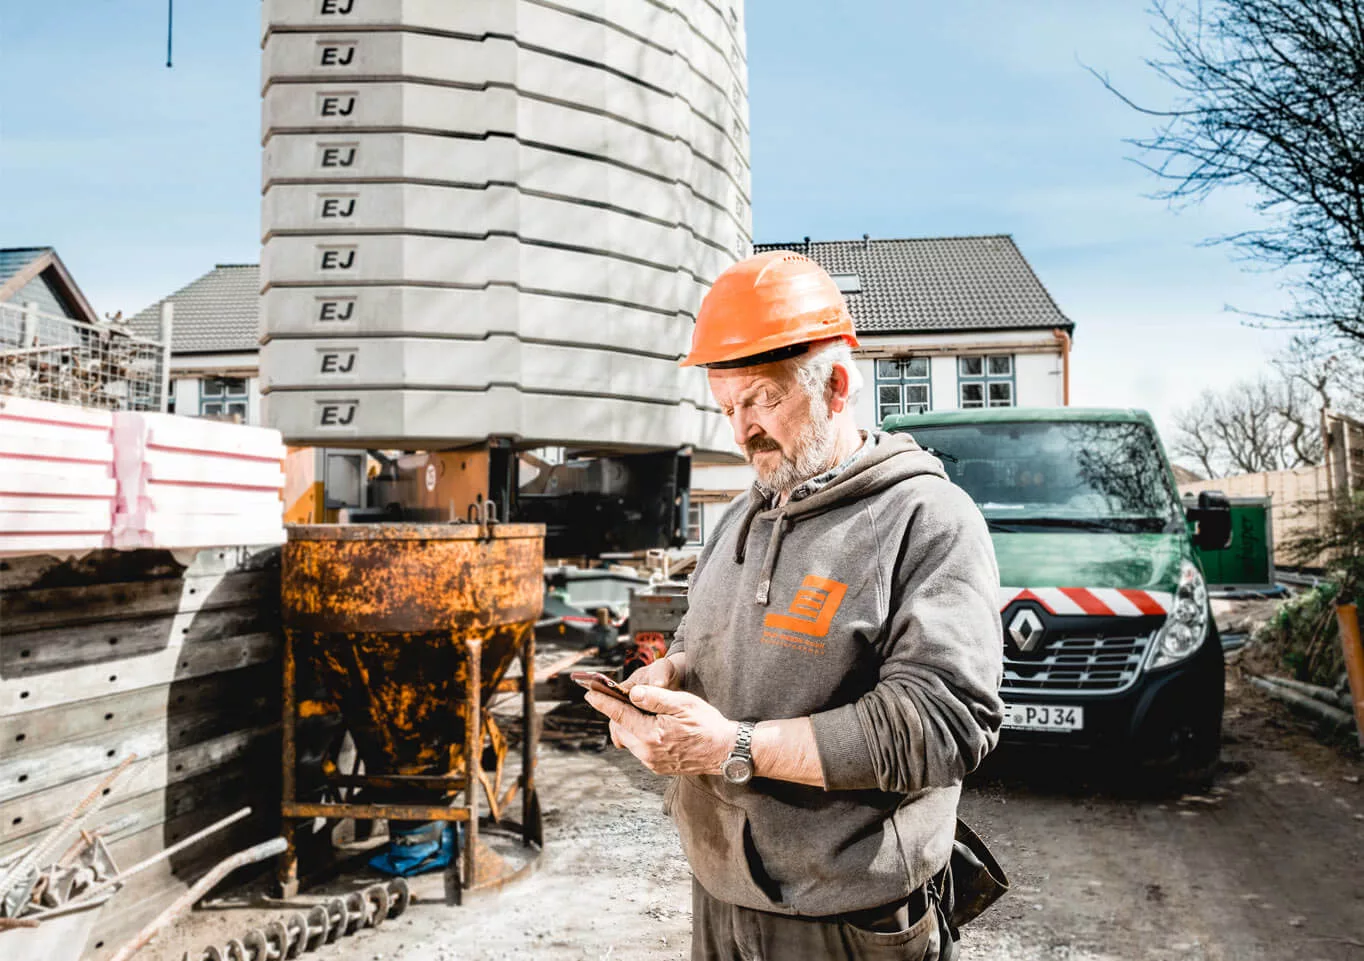 Geschäftsführer der Edlef Jensen GmbH schaut auf der Baustelle auf sein Handy